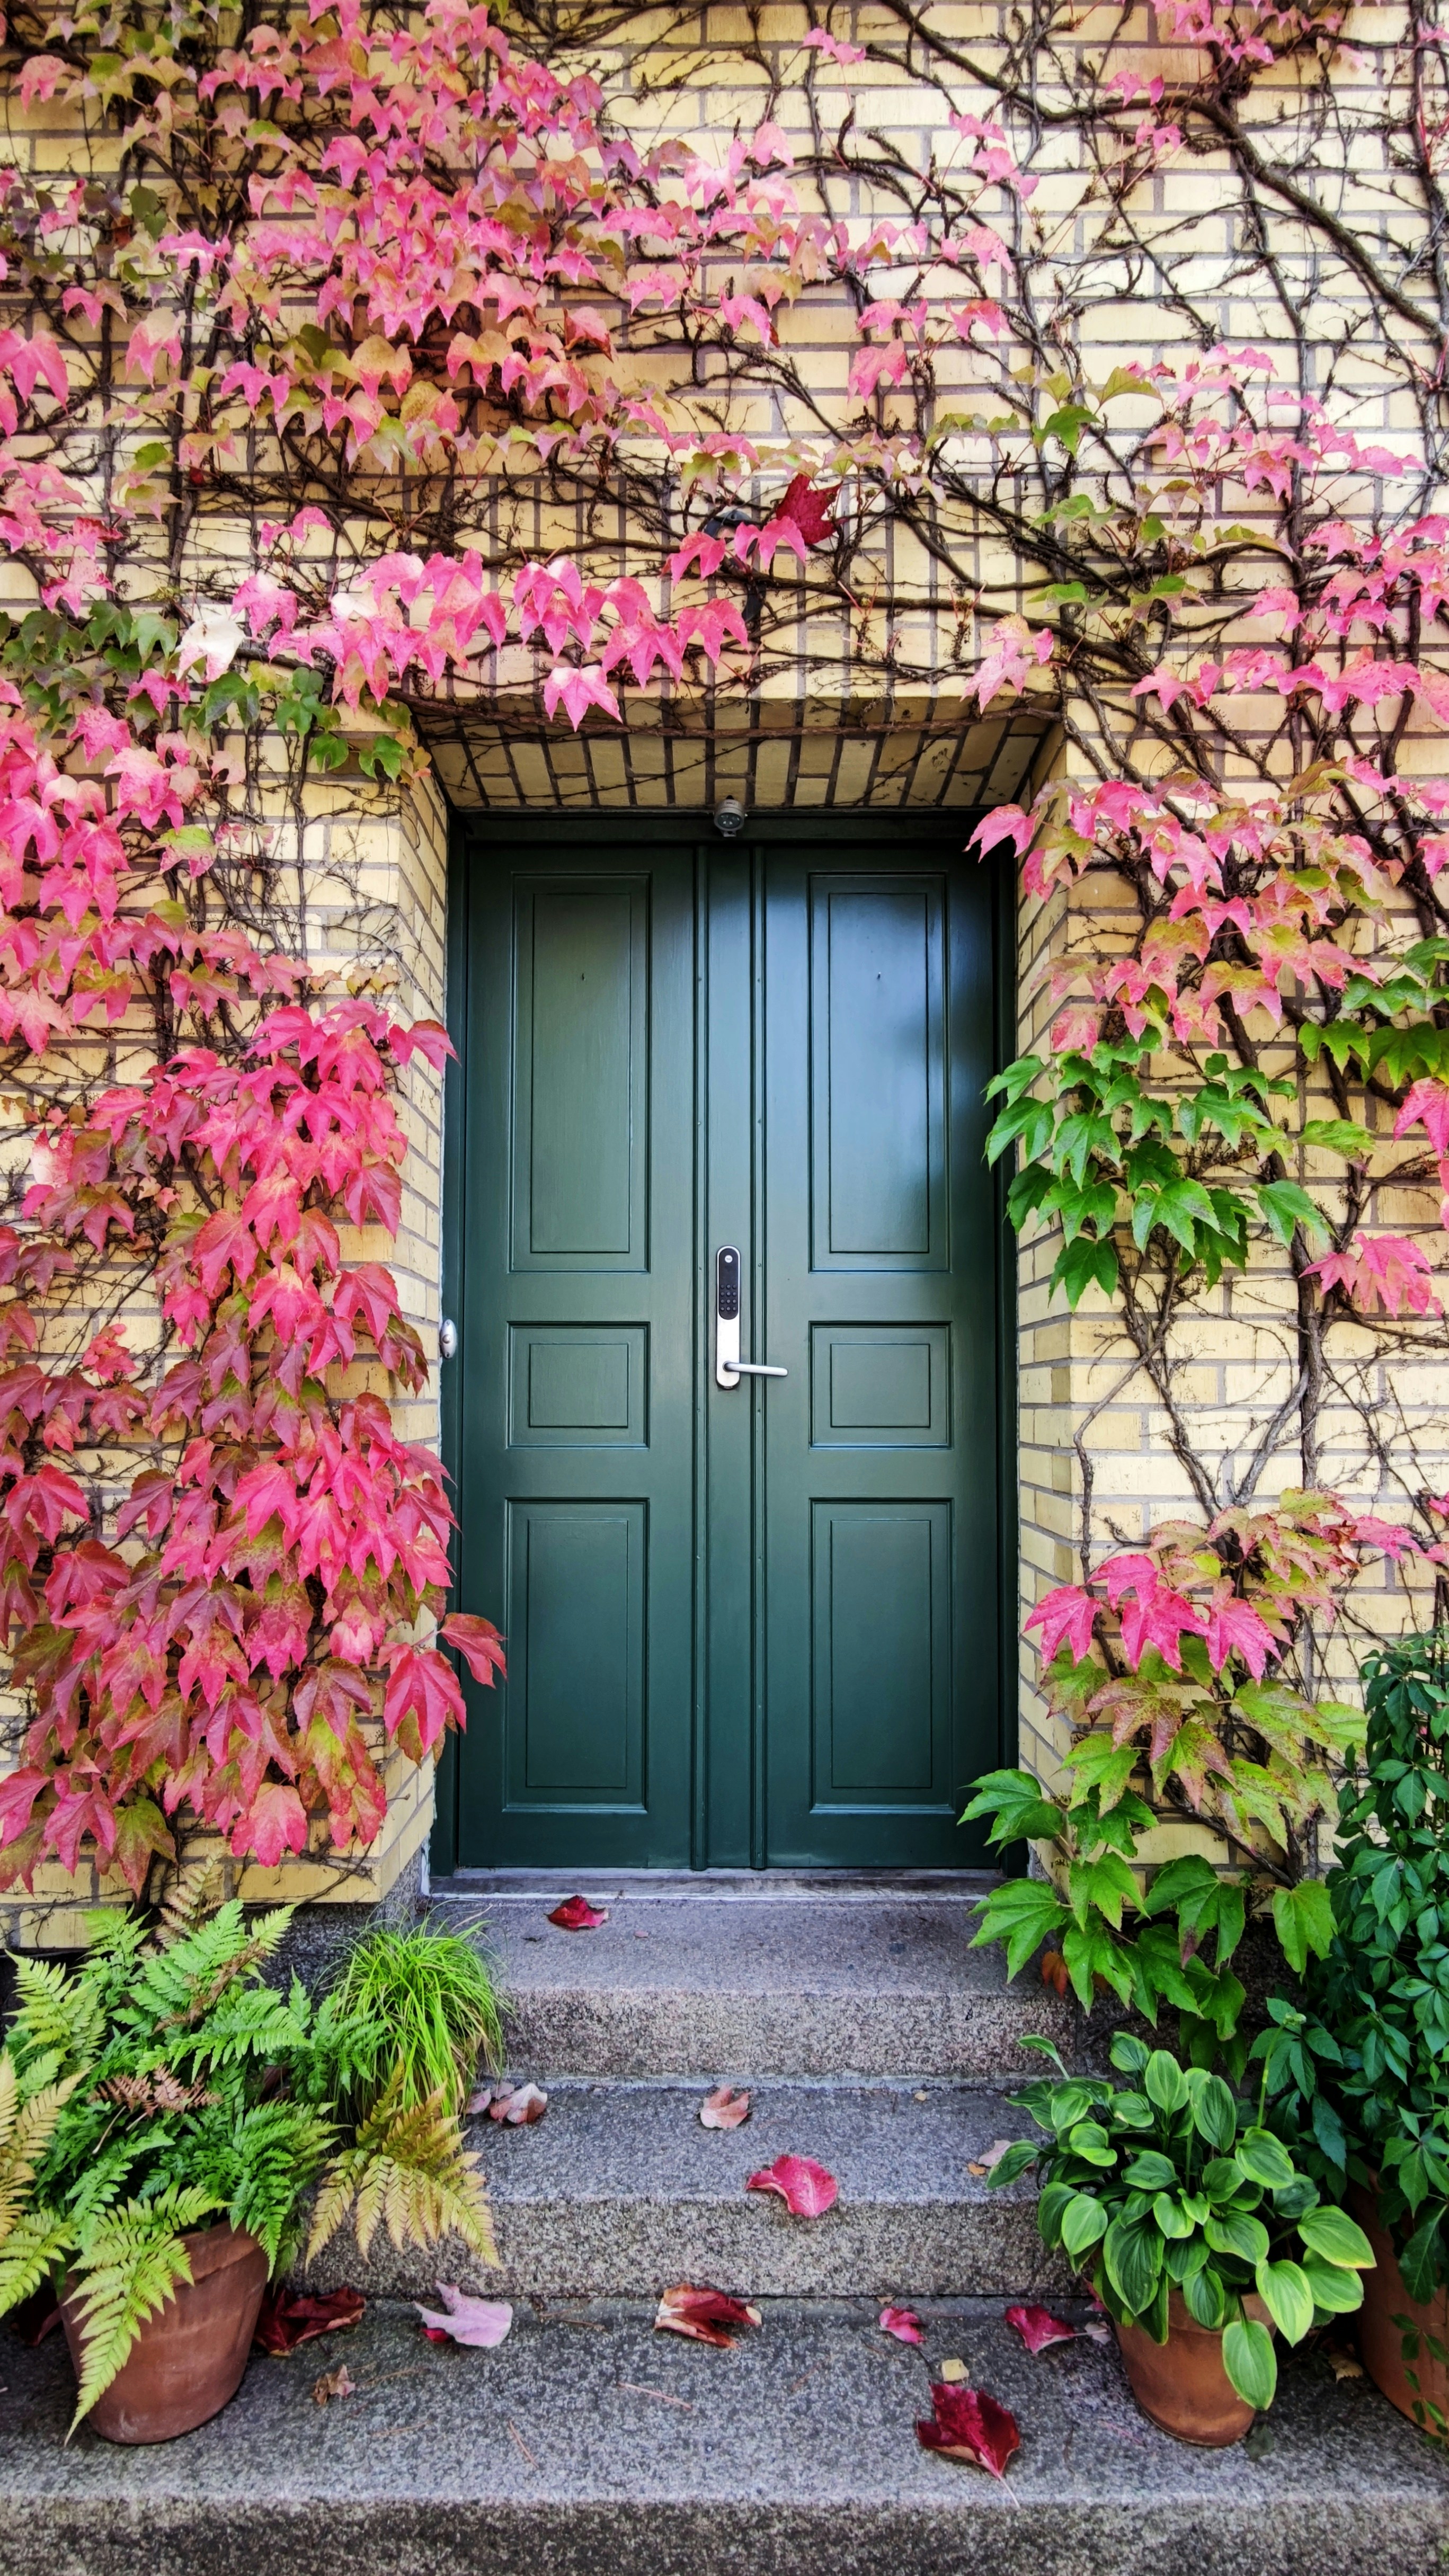 Puerta principal de una casa | Fuente: Pexels